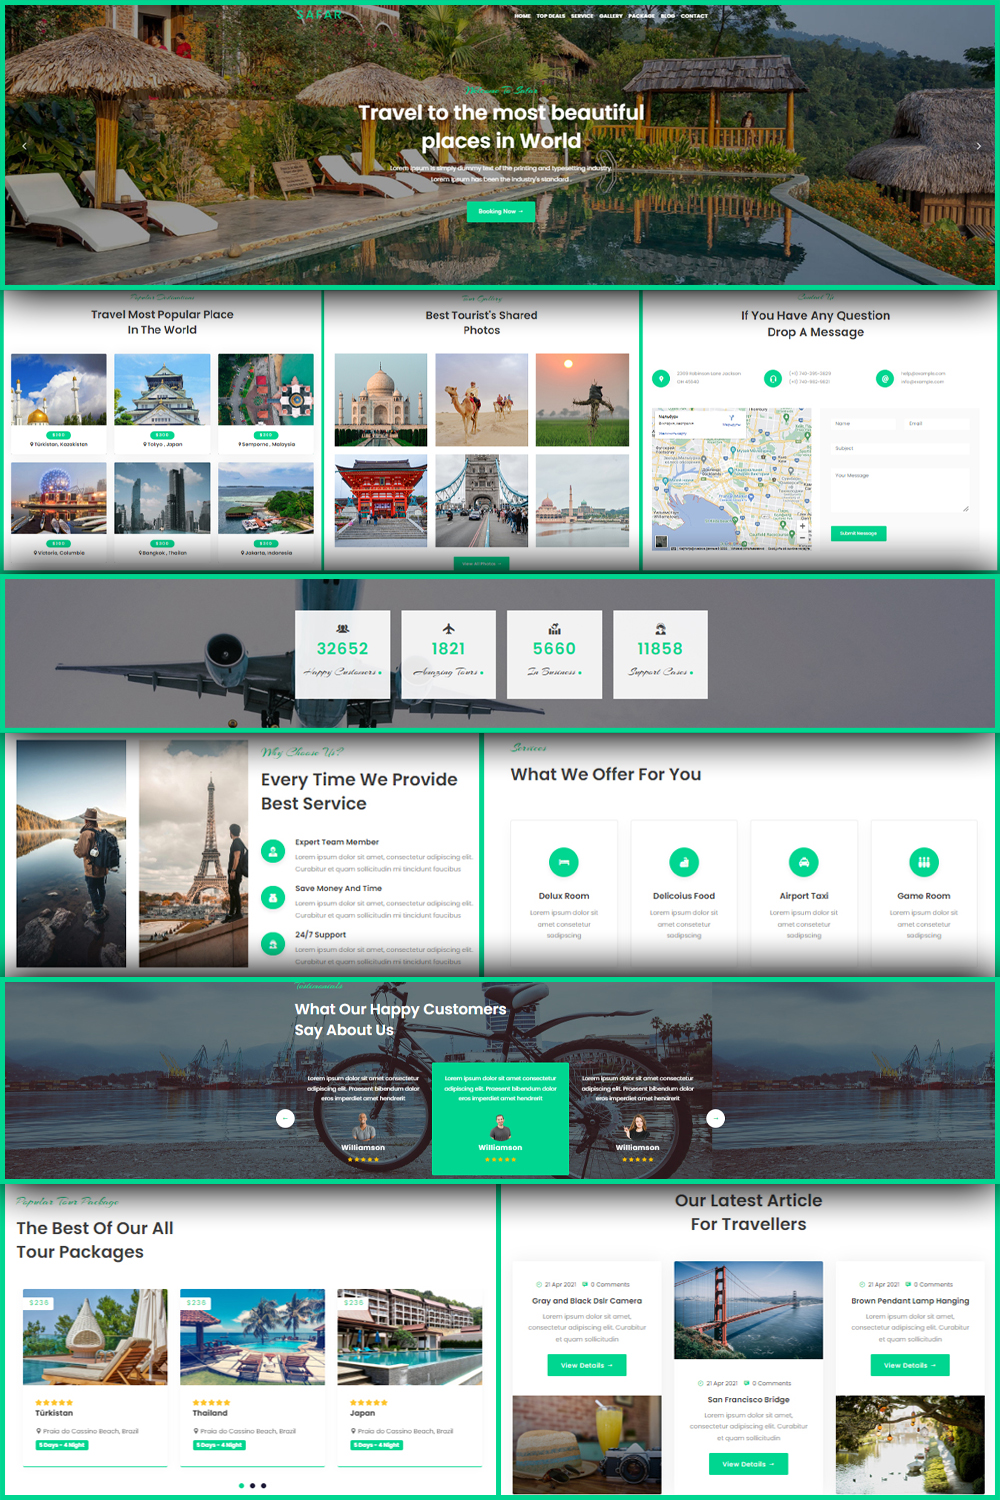 Safar - Tour And Travel Agency WordPress Theme - Pinterest.